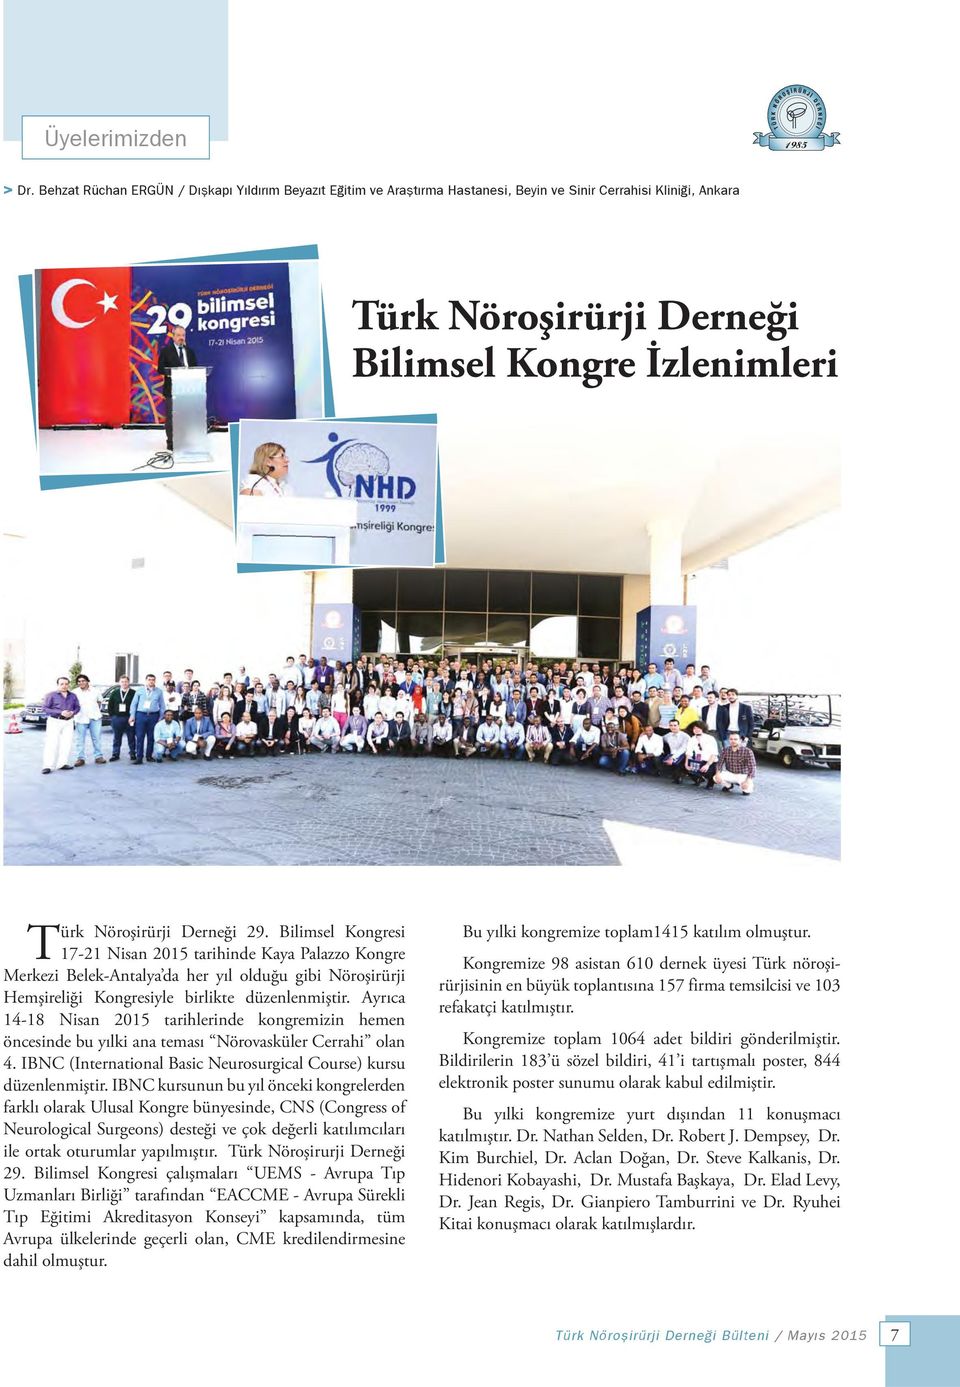 Bilimsel Kongresi 17-21 Nisan 2015 tarihinde Kaya Palazzo Kongre Merkezi Belek-Antalya da her yıl olduğu gibi Nöroşirürji Hemşireliği Kongresiyle birlikte düzenlenmiştir.